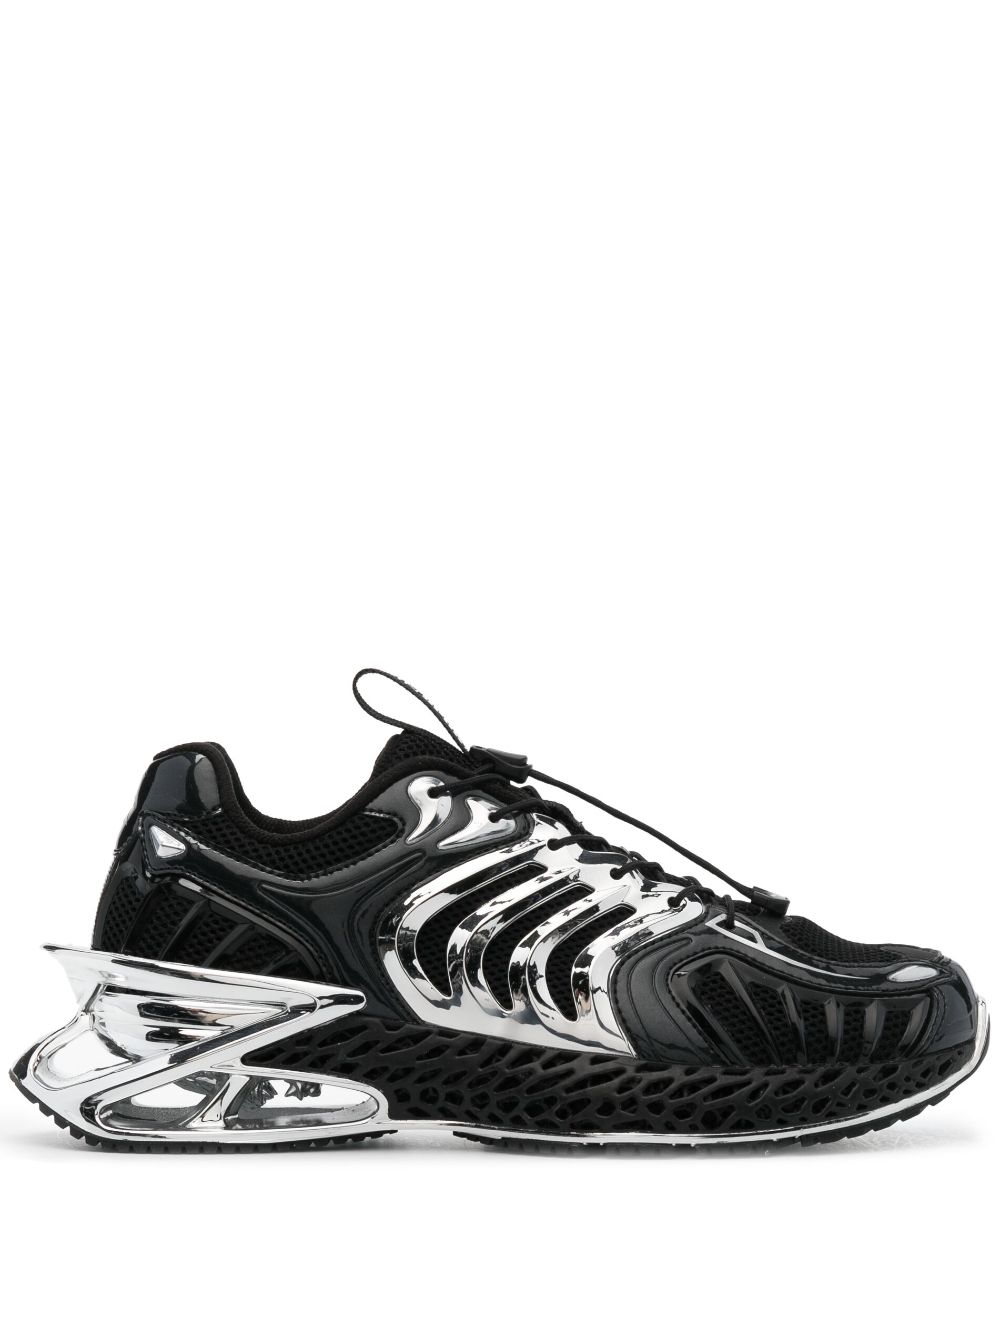 Plein Sport The Thunder Stroke Gen X 02 Sneakers In Black